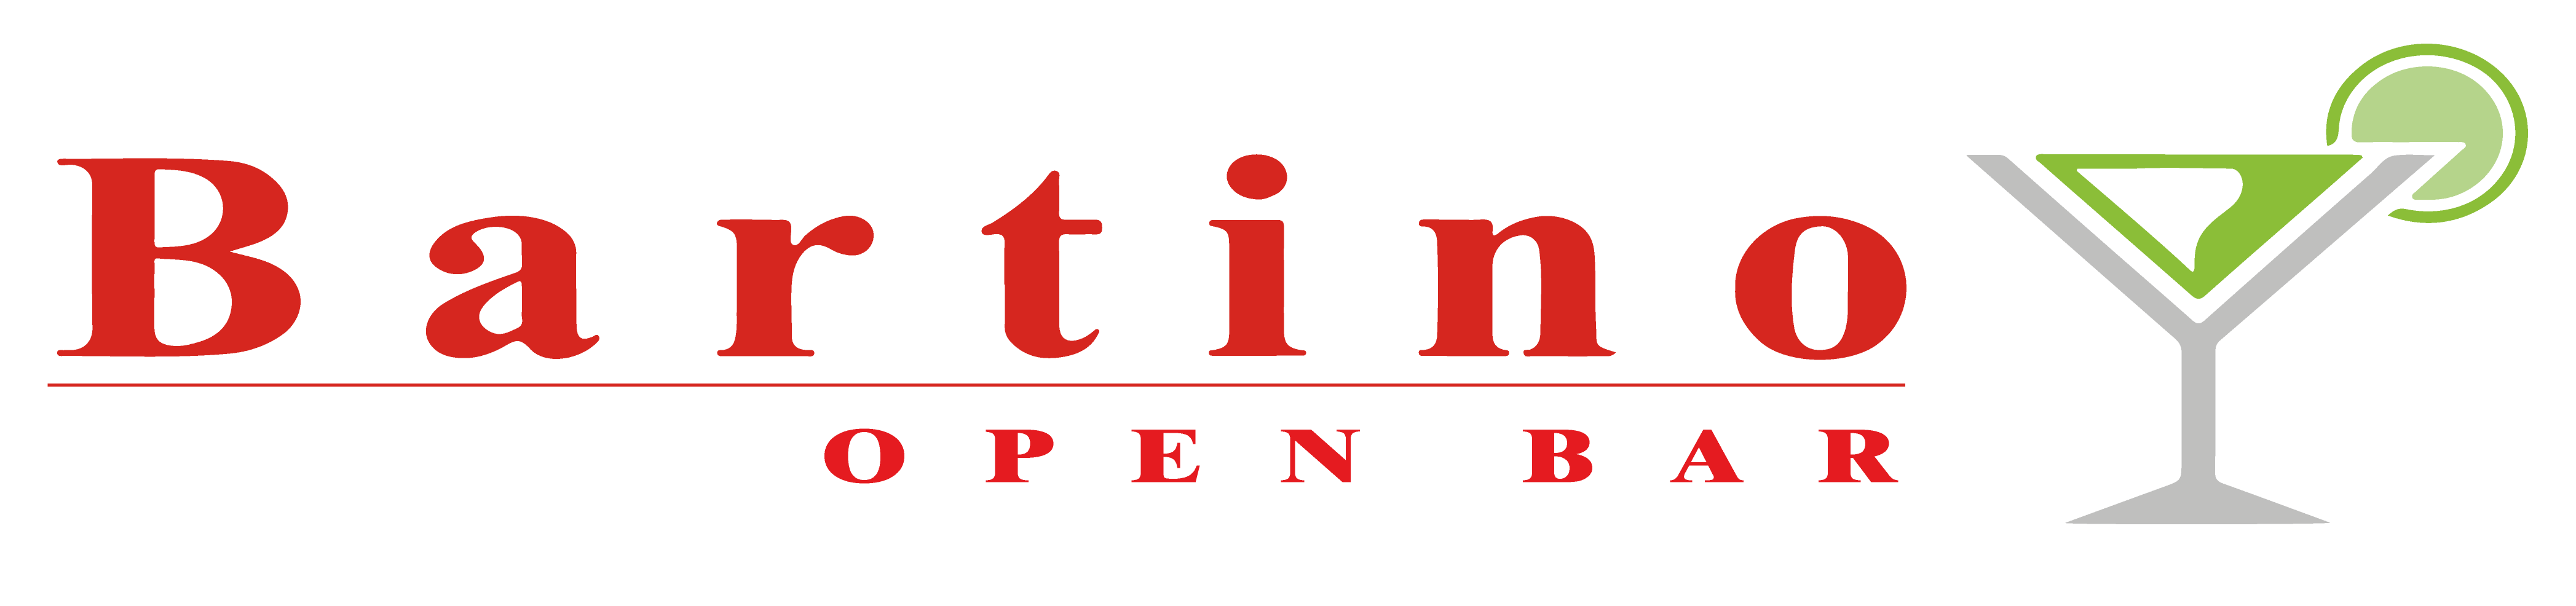 Bartino Open Bar Temático